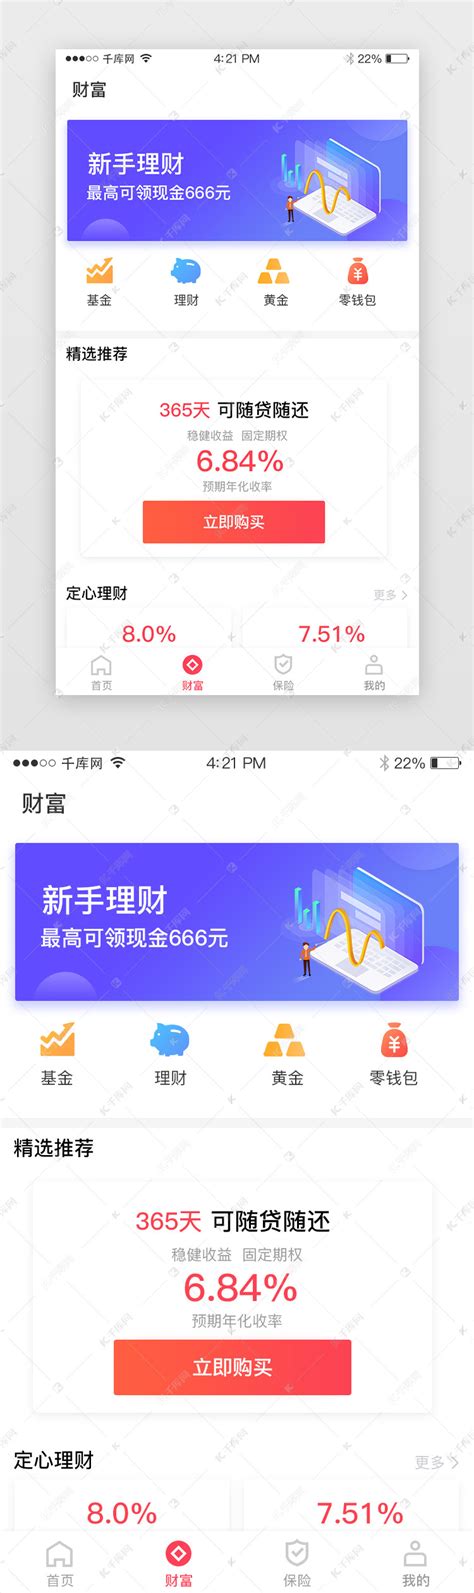 蓝色 红色 金融 投资 app 移动端ui界面设计素材-千库网